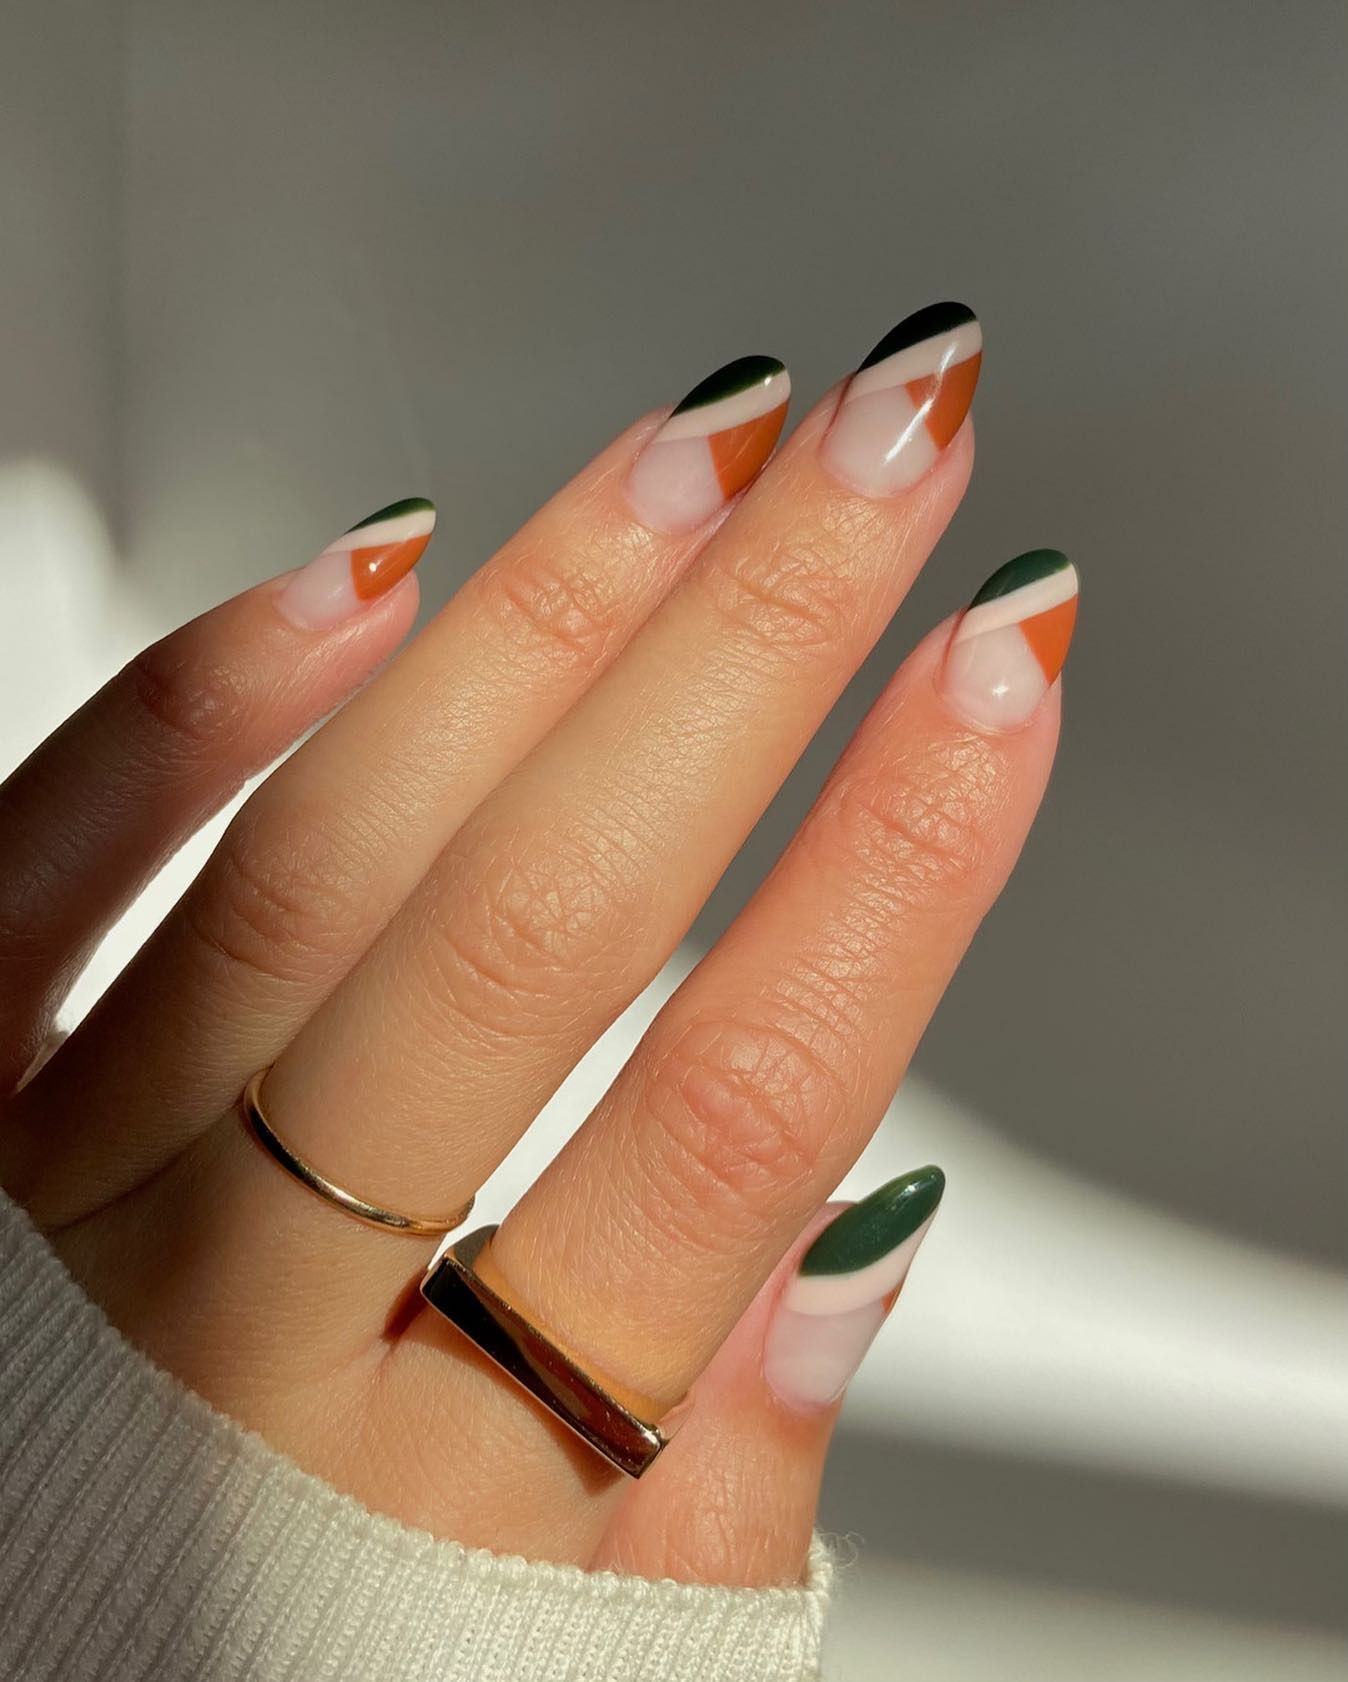 40 Black Nail Designs To Try This Year - Ray Amaari | Nail tip designs,  French tip nail designs, French tip acrylic nails